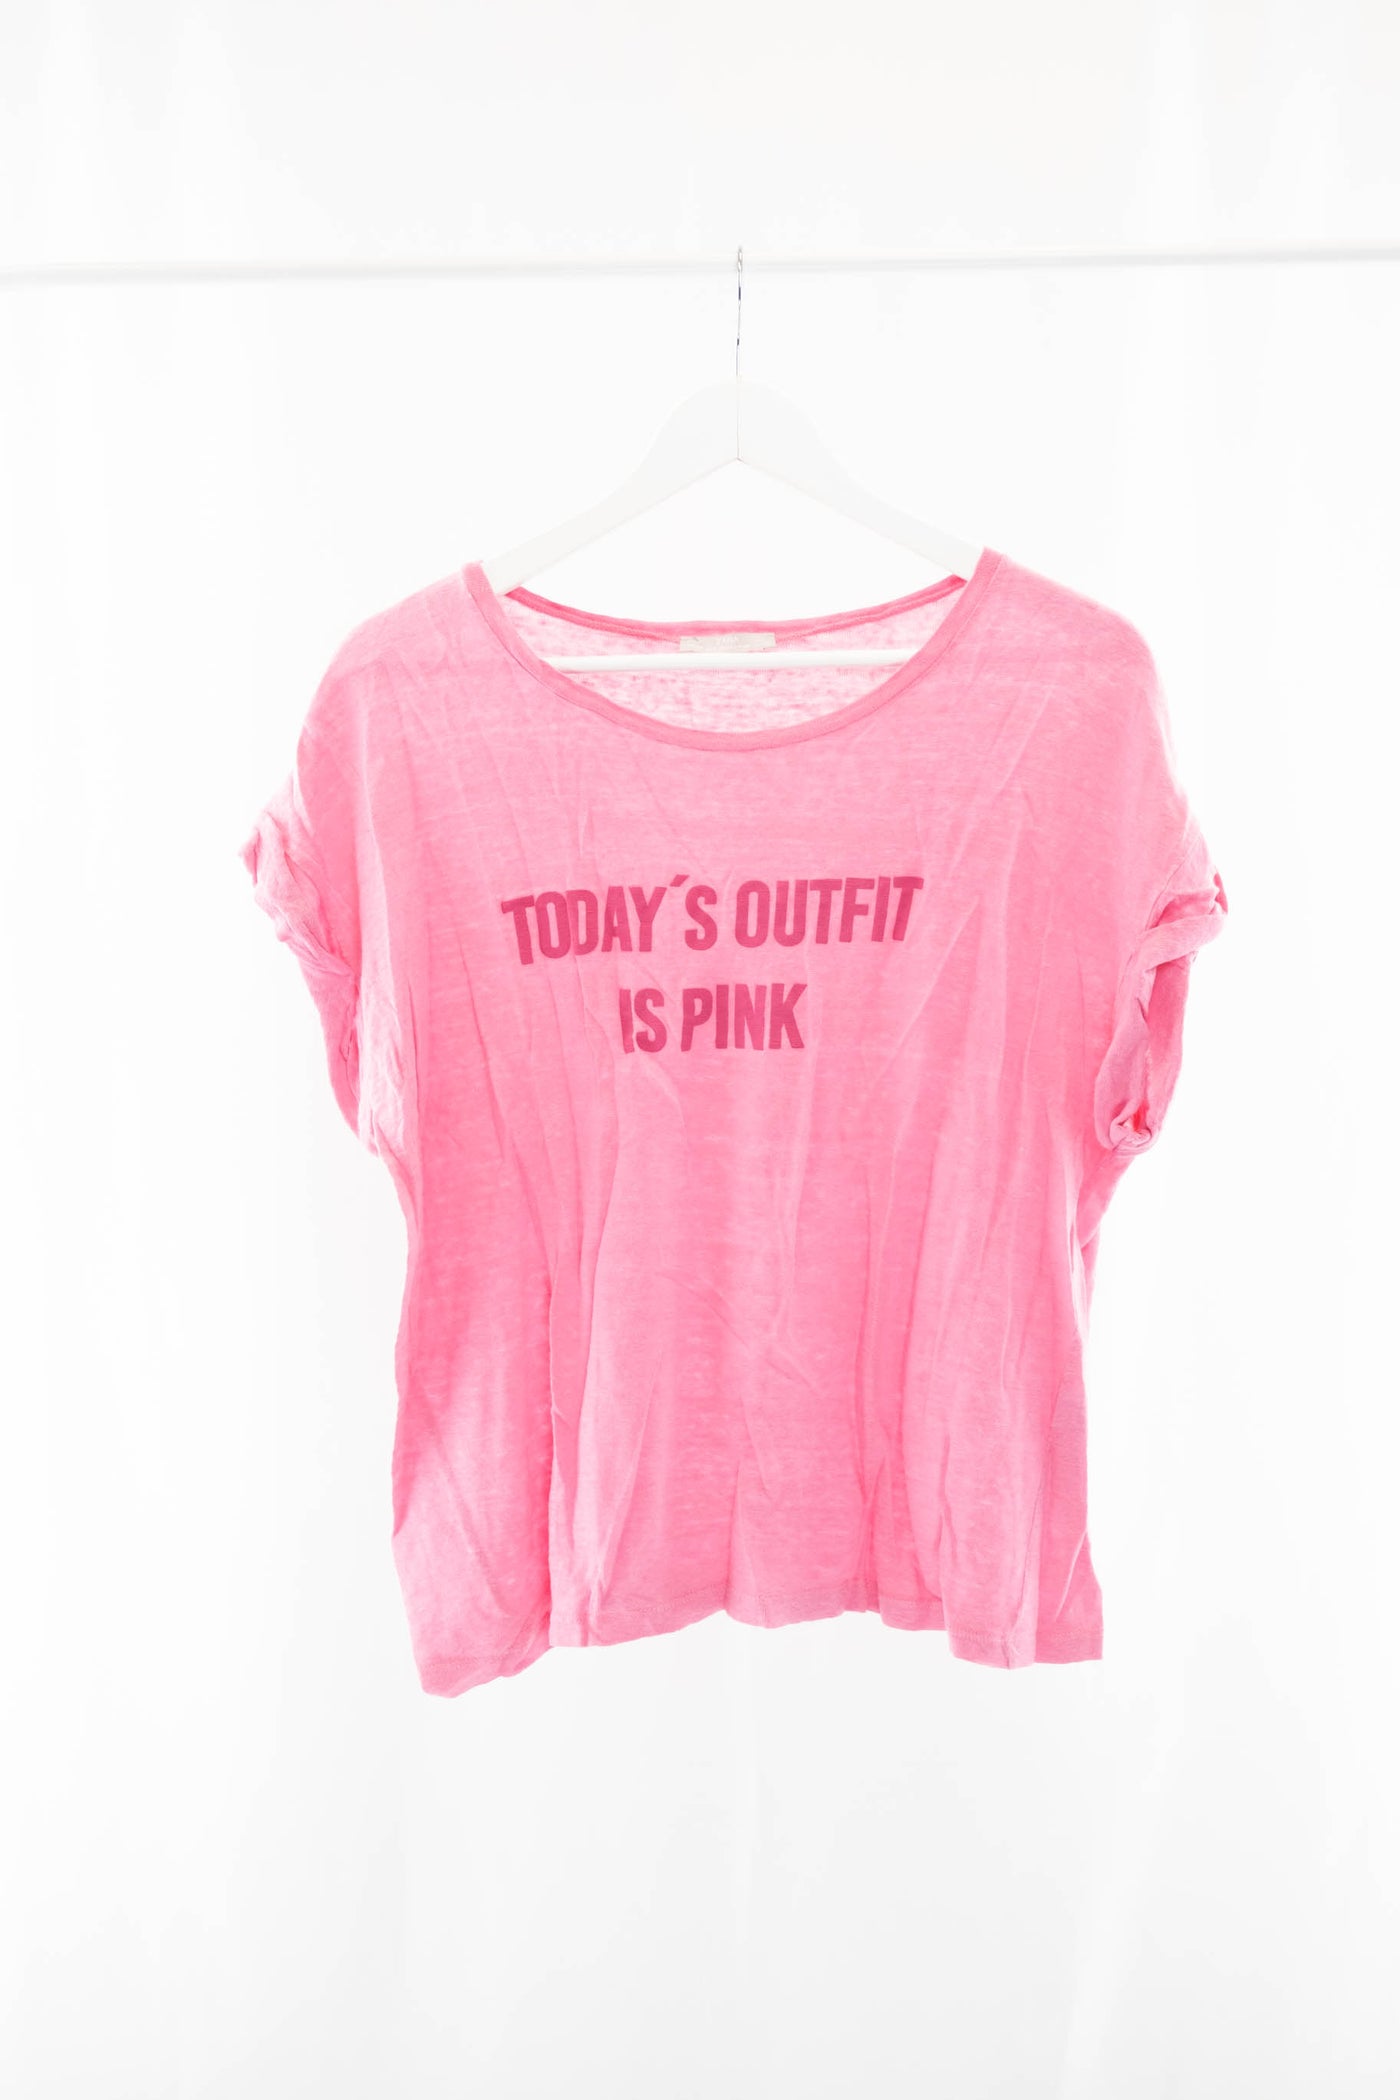 Camiseta rosa